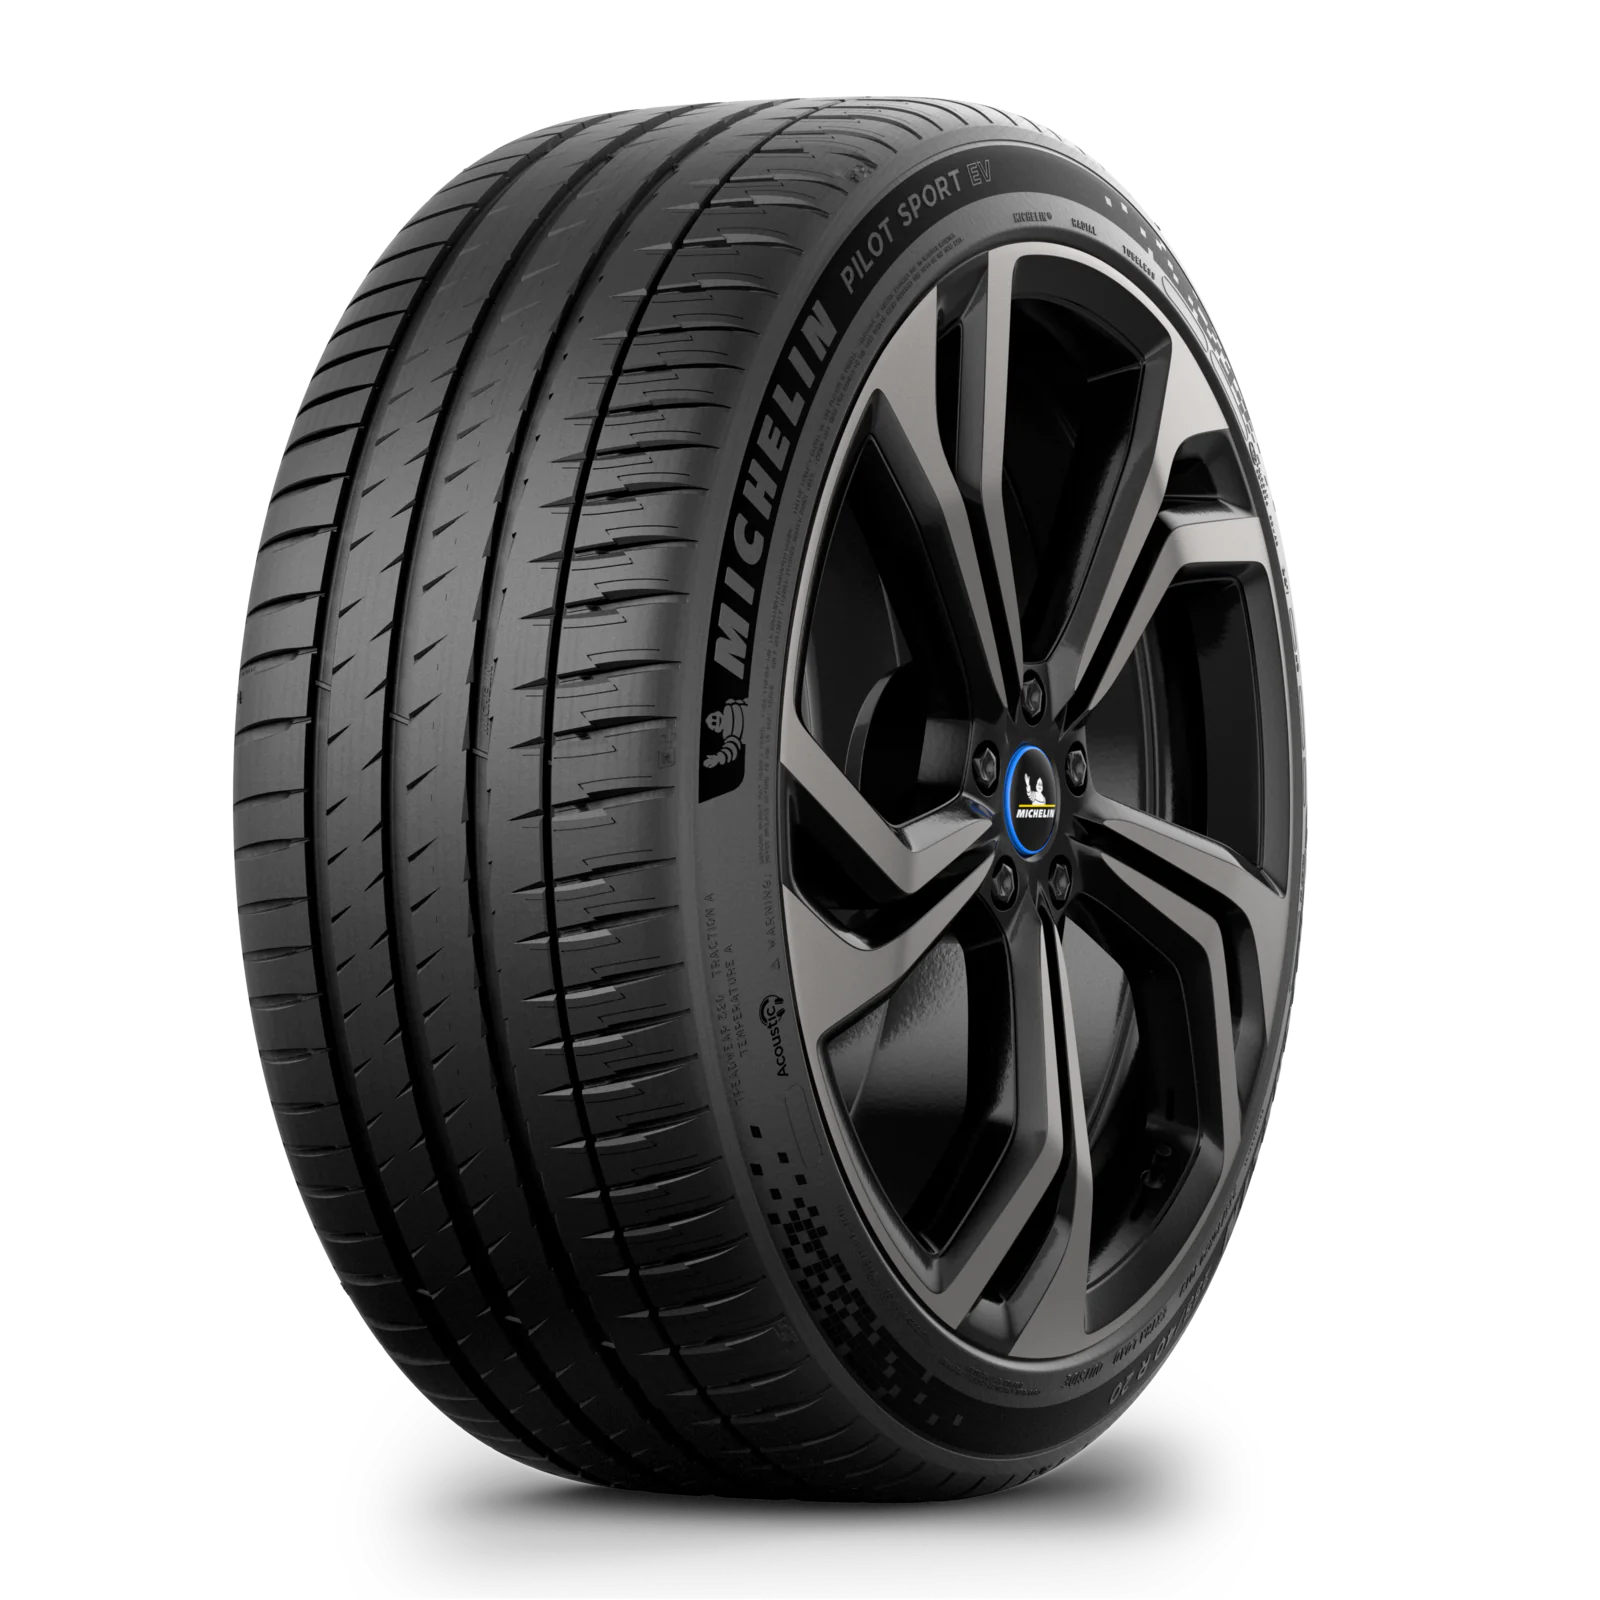 Michelin Michelin 265/45 R20 108W PILOT SPORT EV XL pneumatici nuovi Estivo 